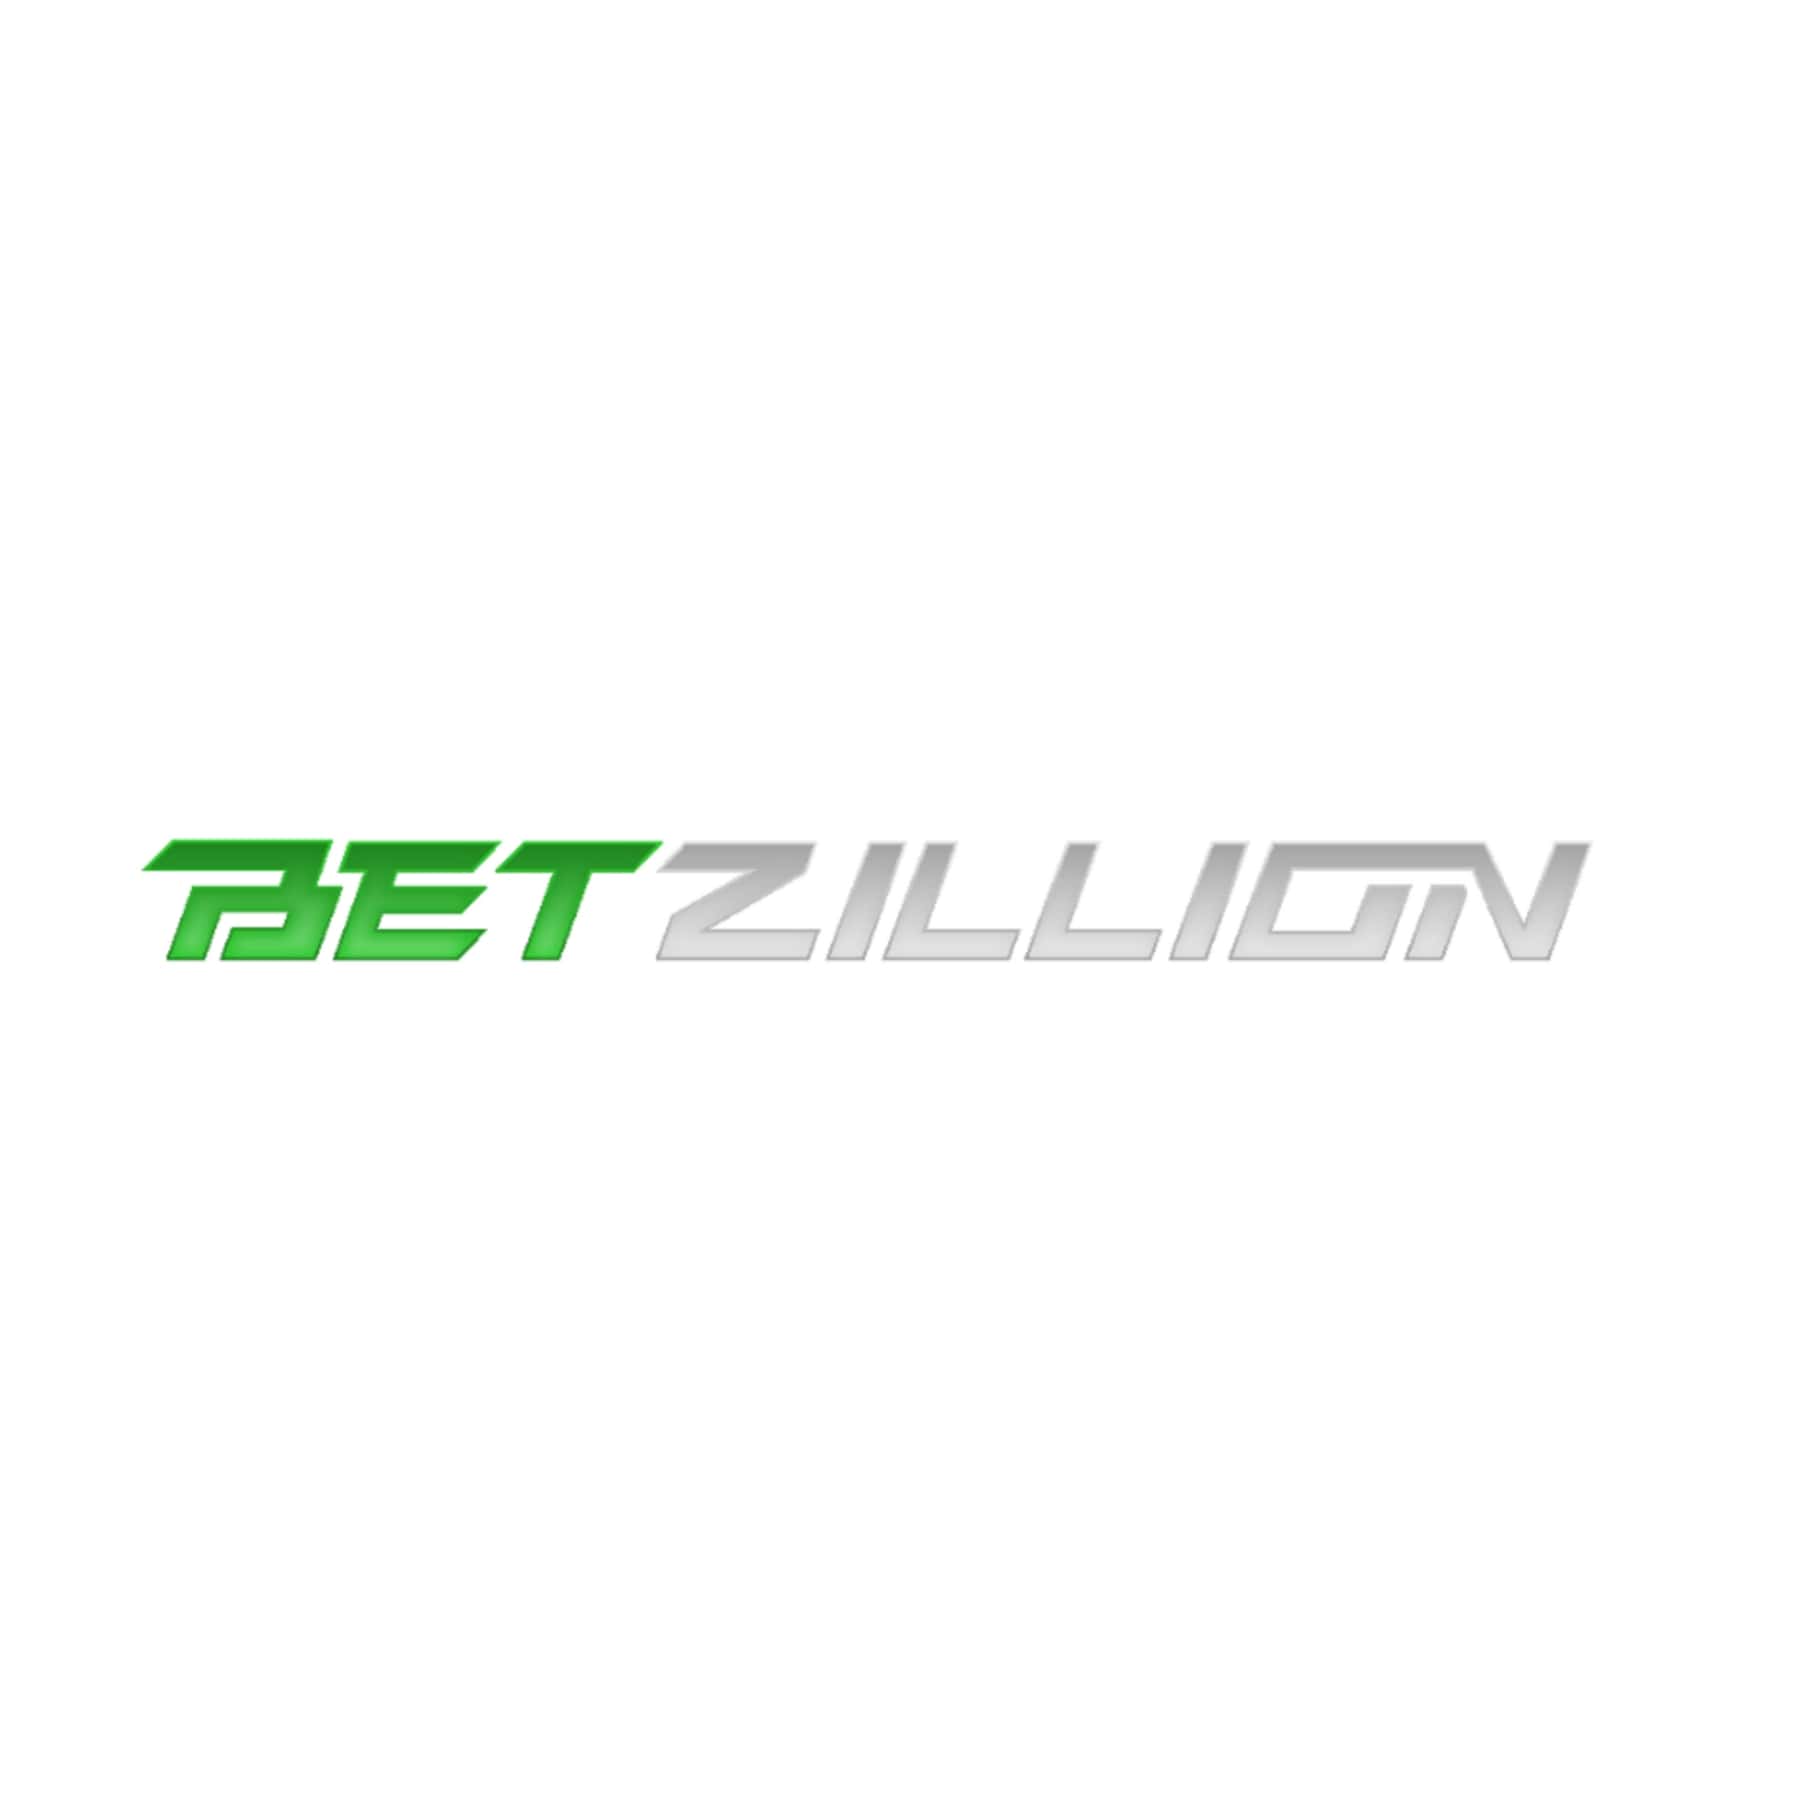 Betzillion UK